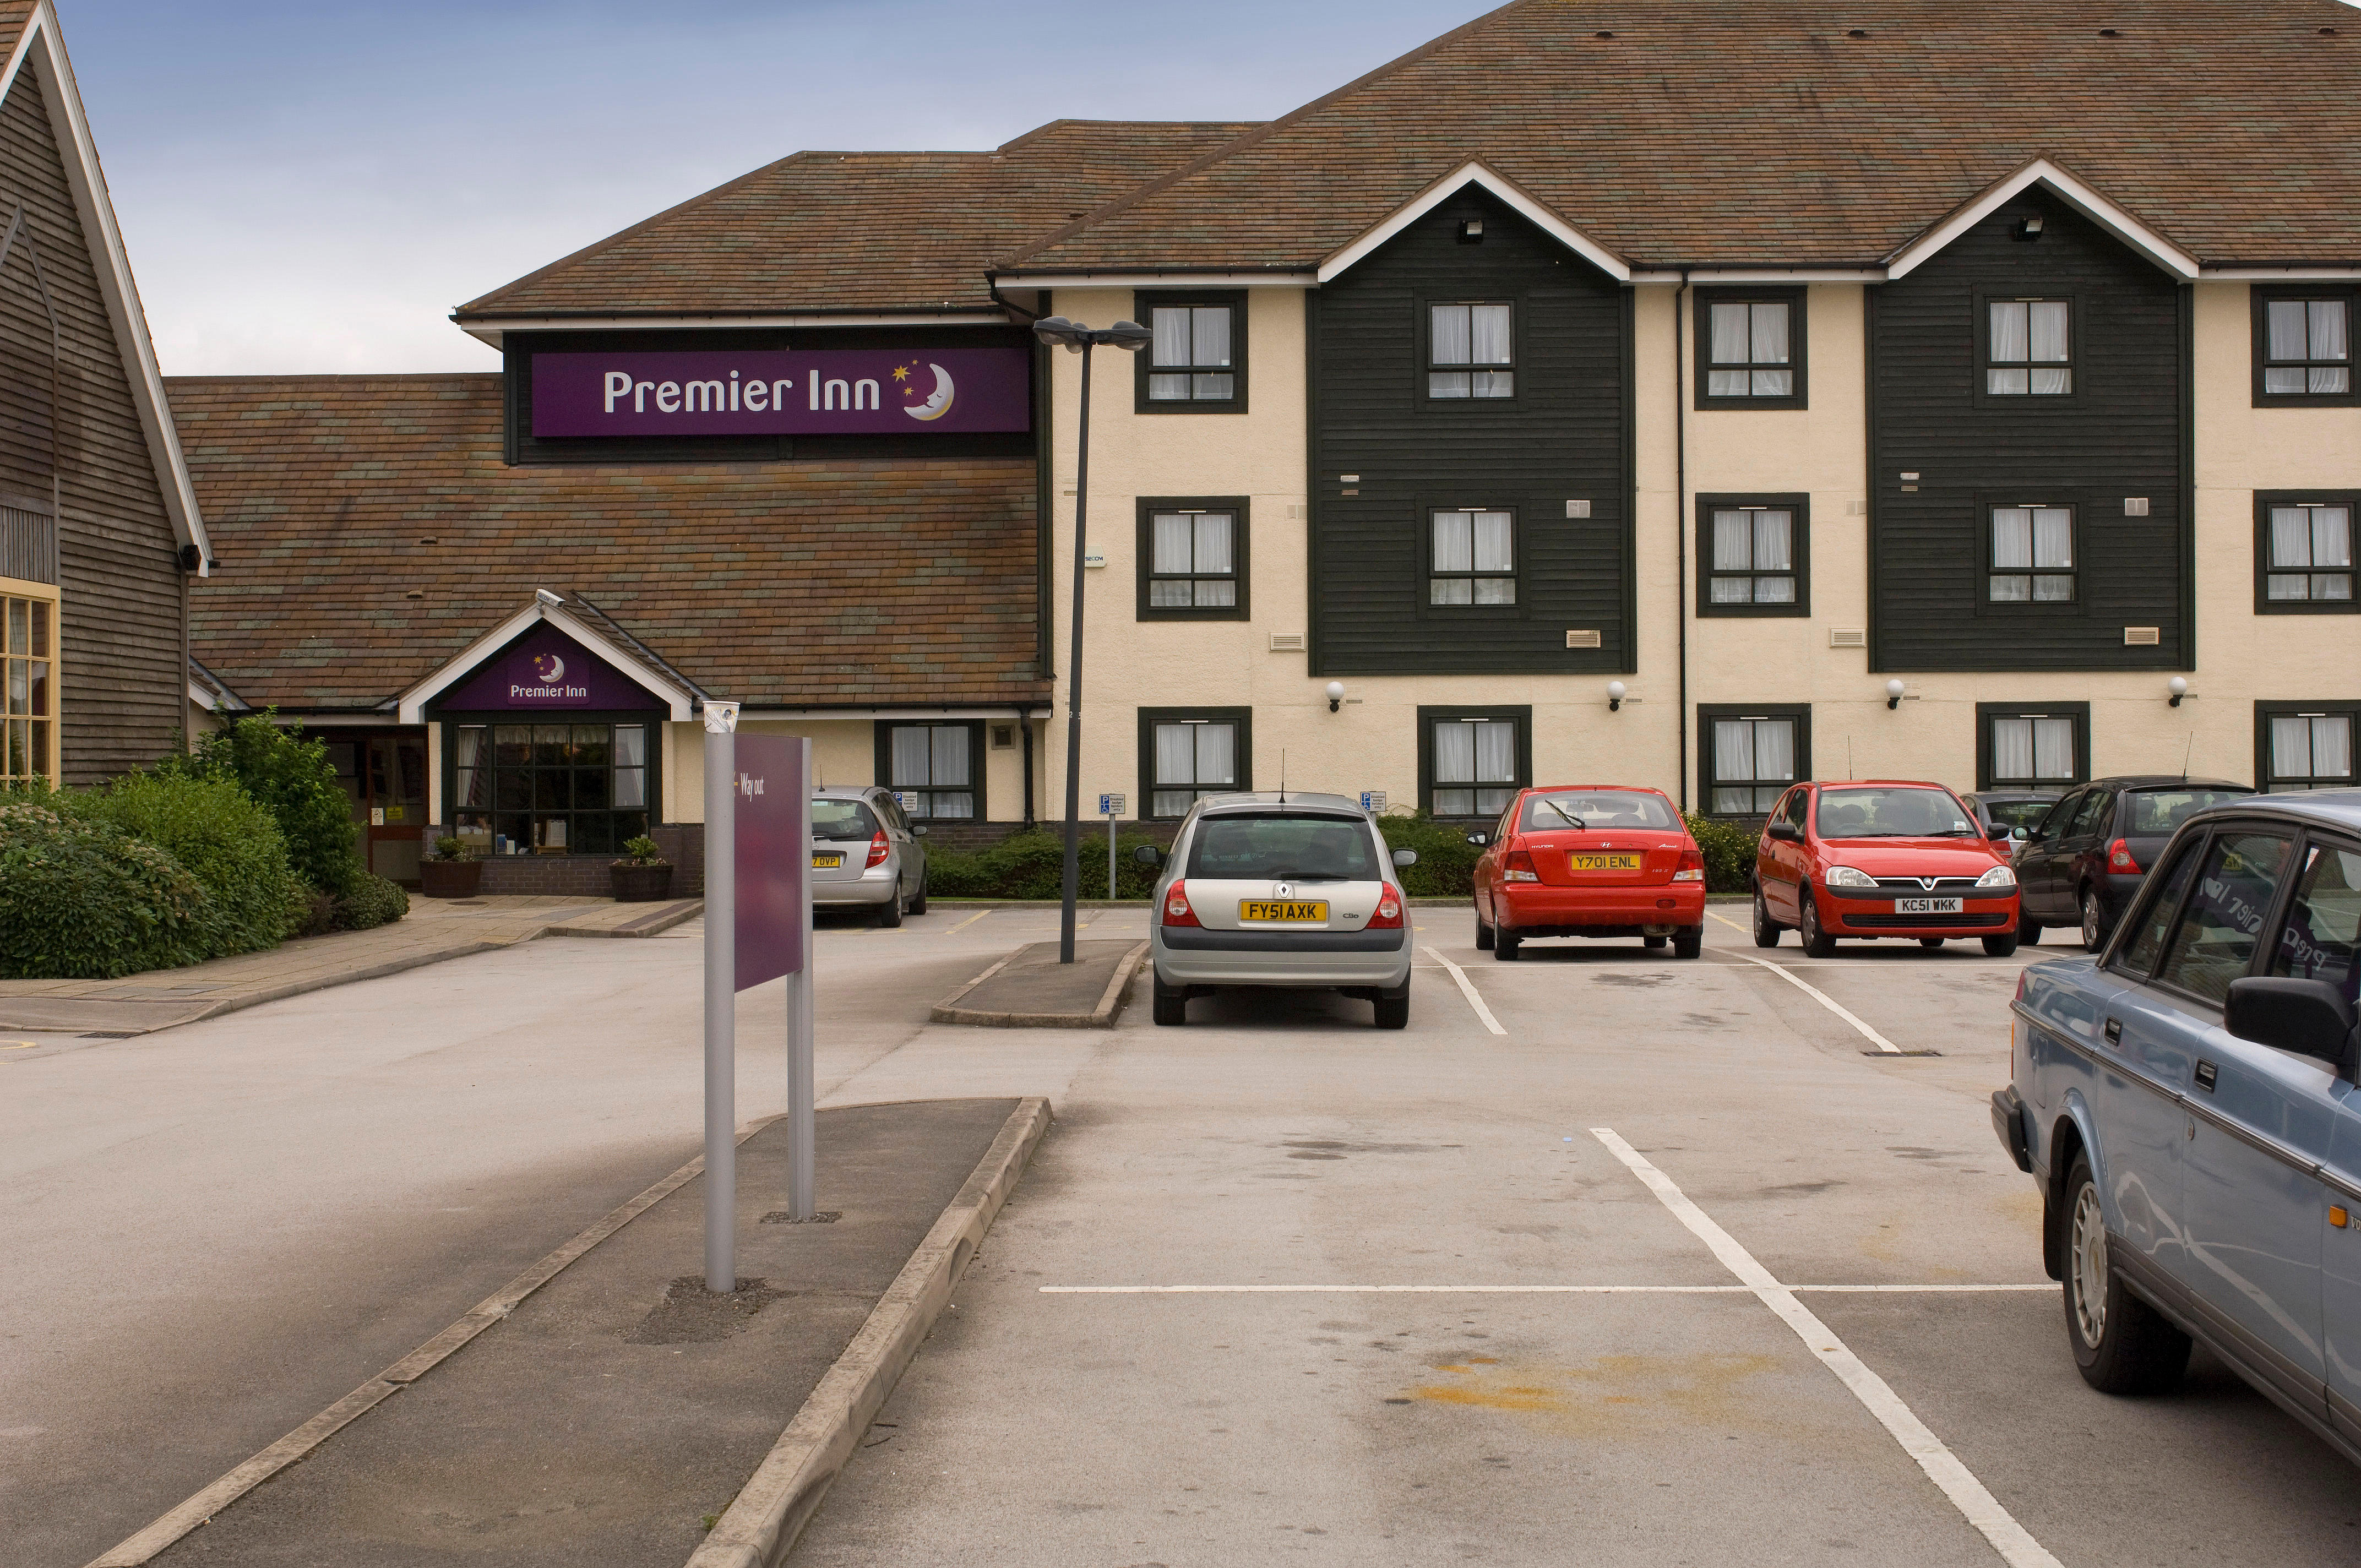 Premier Inn Doncaster (Lakeside) hotel exterior Premier Inn Doncaster (Lakeside) hotel Doncaster 03337 774643